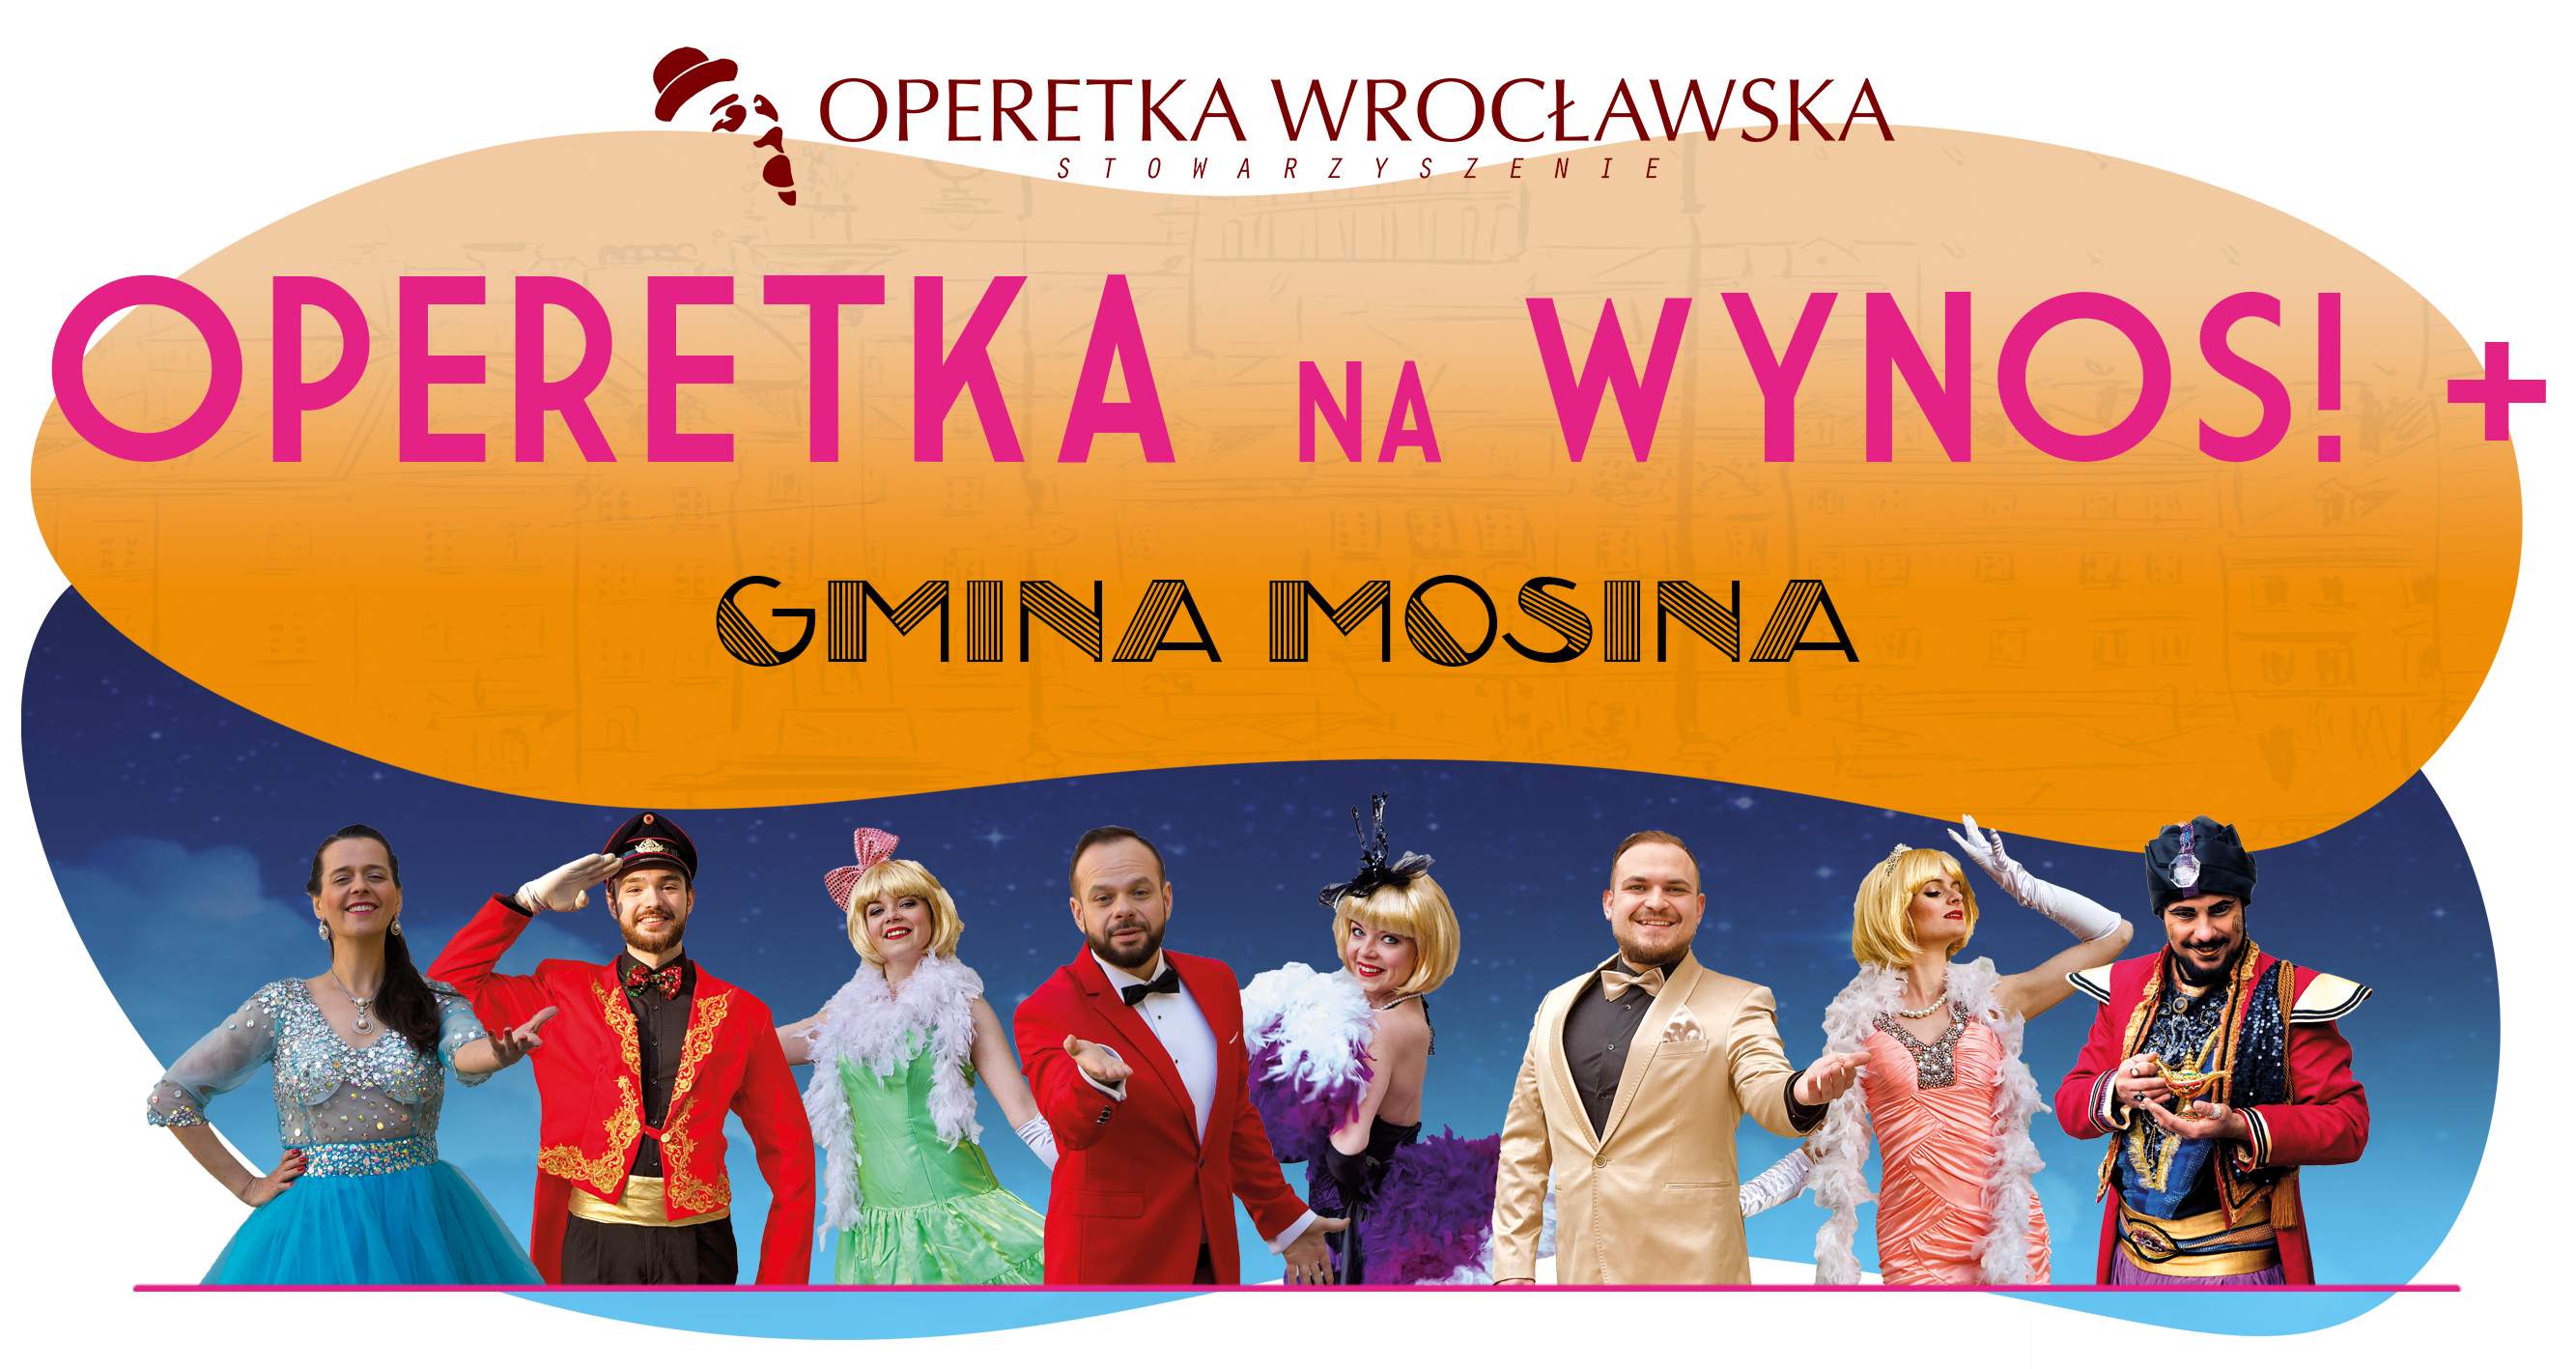 Operetka na WYNOS!+ #Gmina Mosina [4.06.2022]